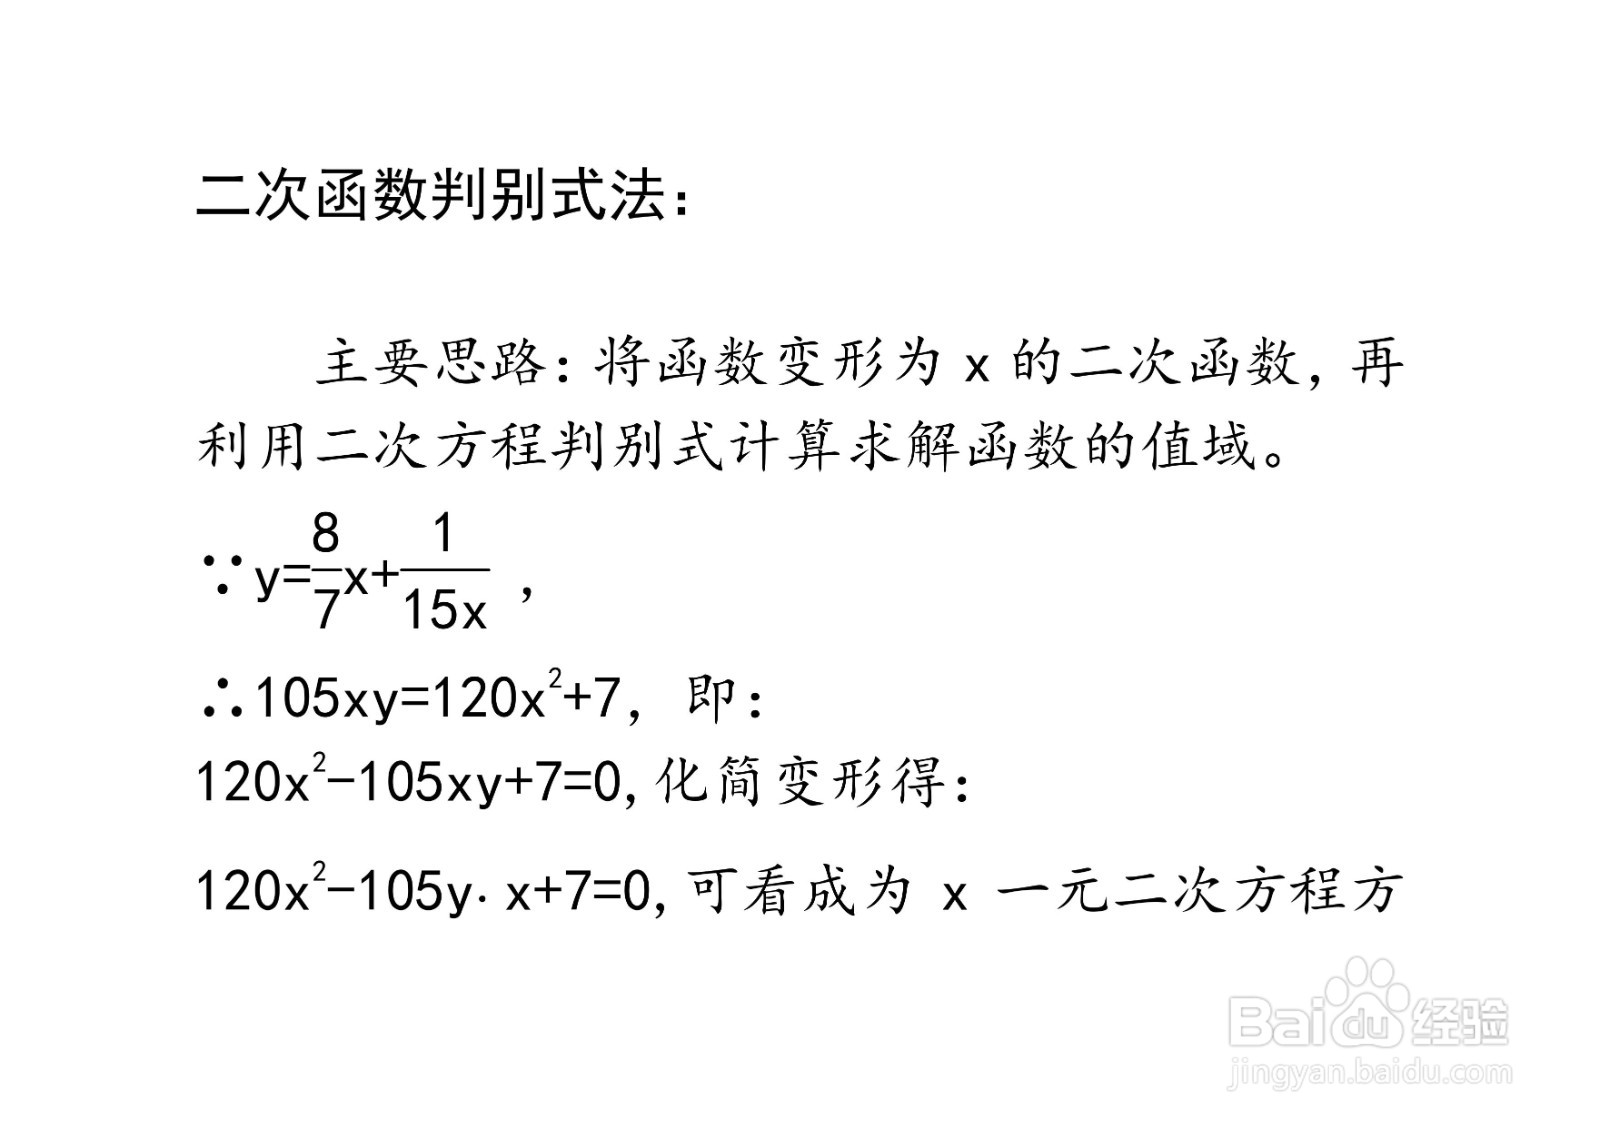 多种方法计算y=8x/7+1/15x在x大于0时的值域